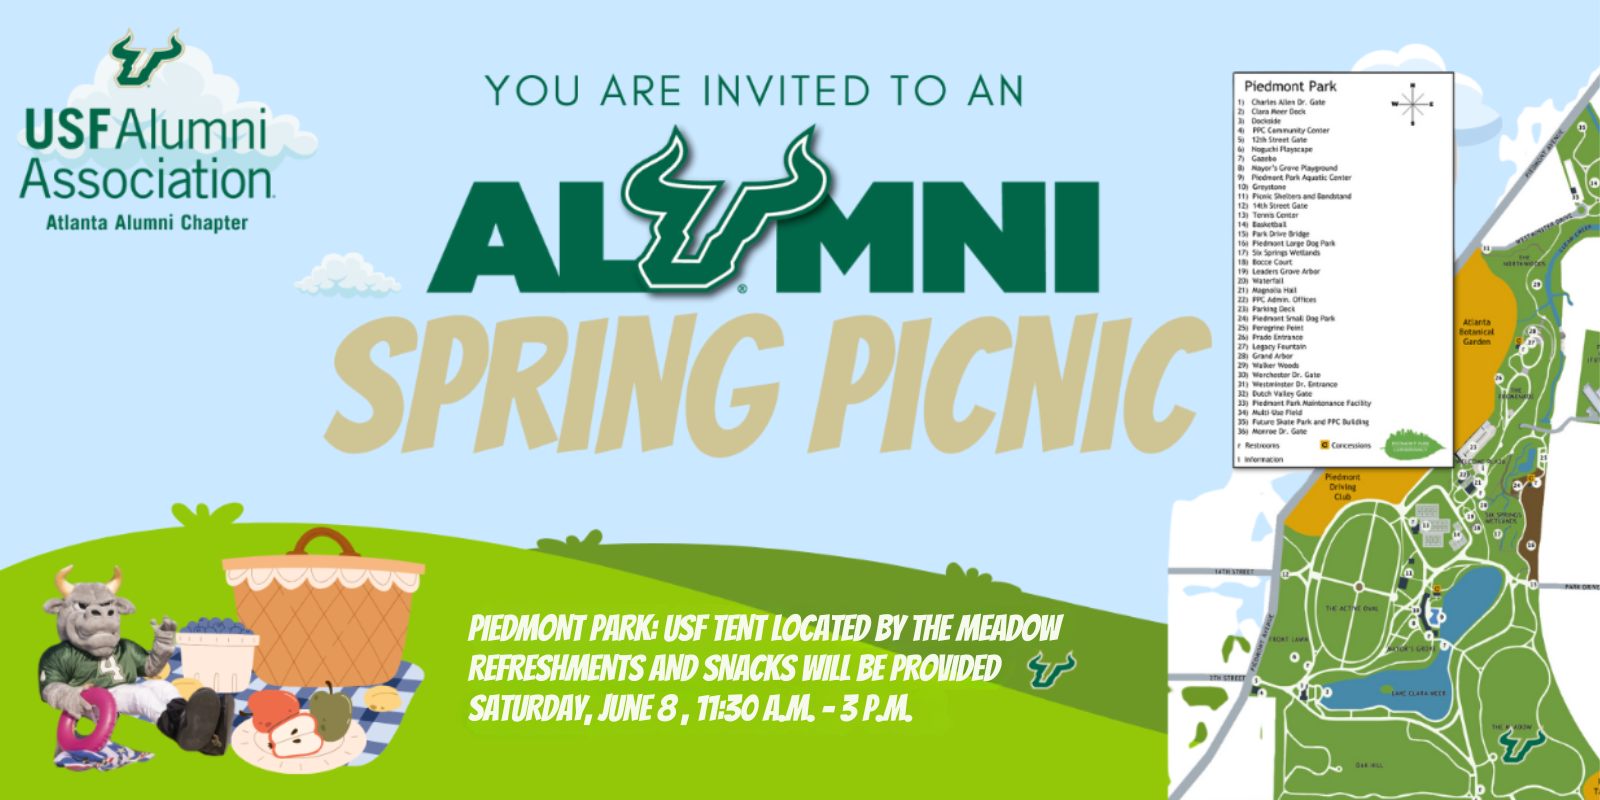 USF Atlanta Alumni Chapter: 2024 Spring Picnic in Piedmont Park